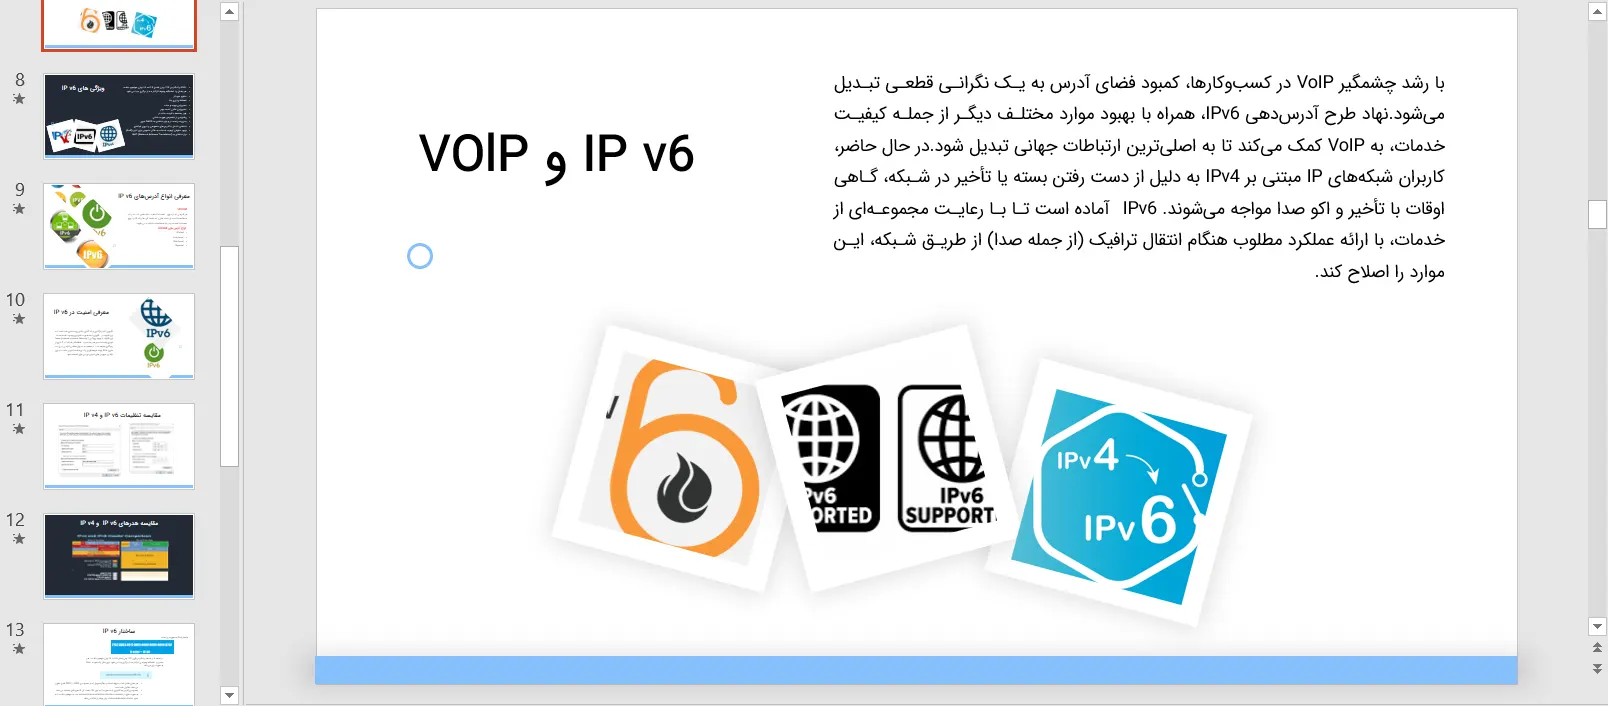 پاورپوینت معرفی IP V6